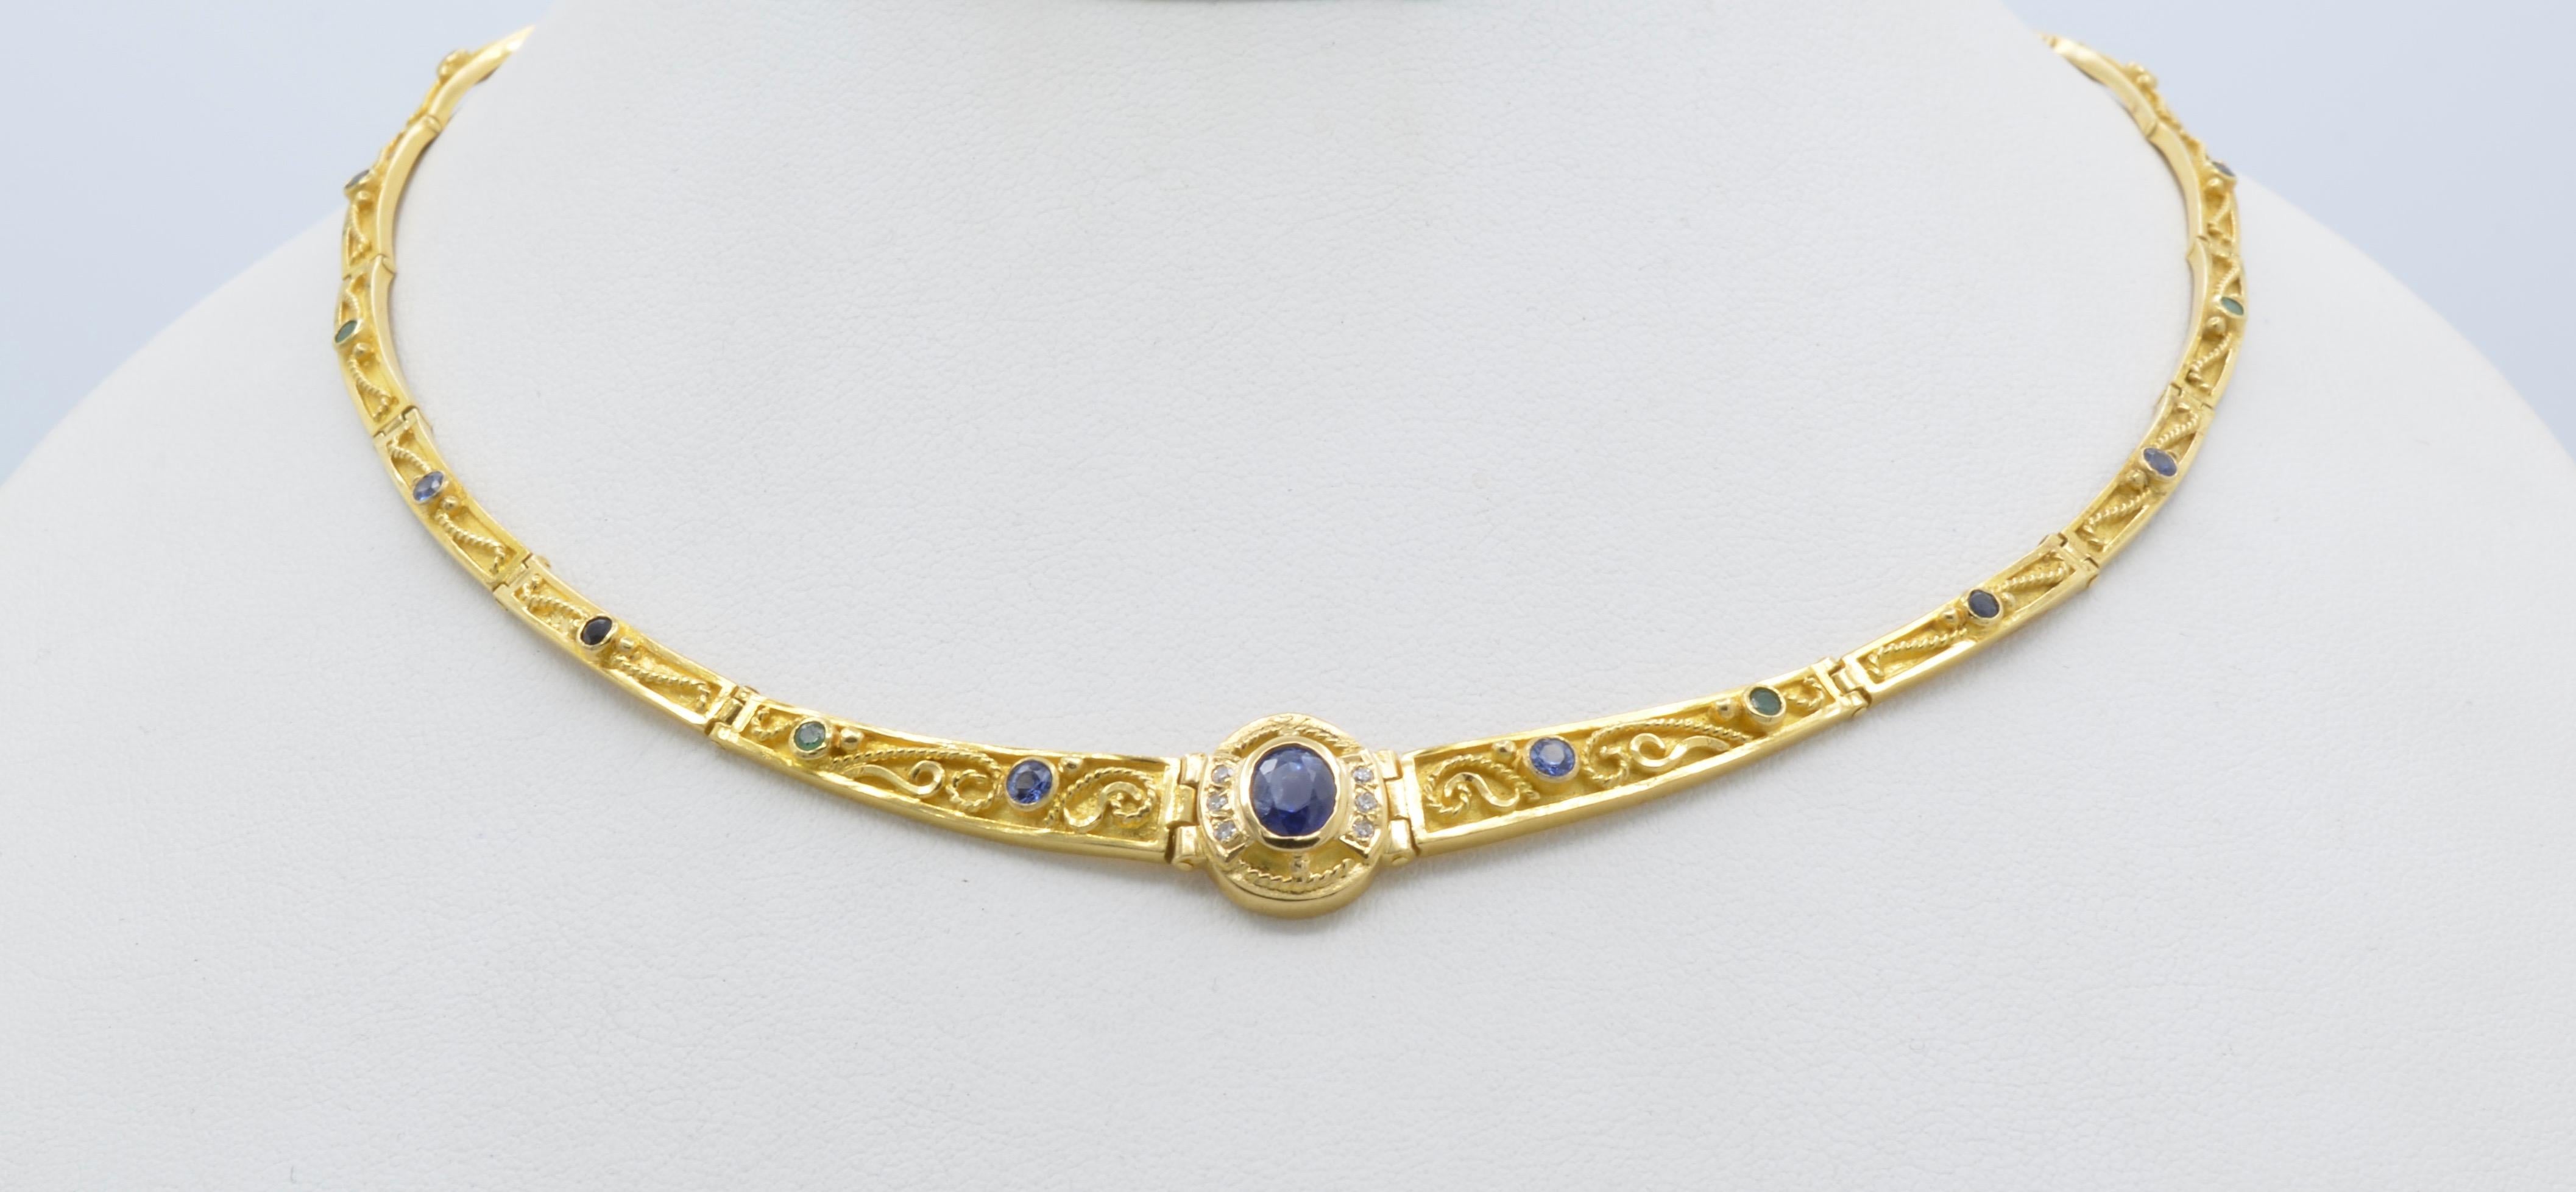 Ce collier grec à maillons en or jaune 18 carats et saphir bleu de 1,1 carat se pose élégamment autour du cou de manière parfaite. Arrondi comme un diadème, les maillons courbés reposent et ont plus de visibilité pour montrer les détails complexes